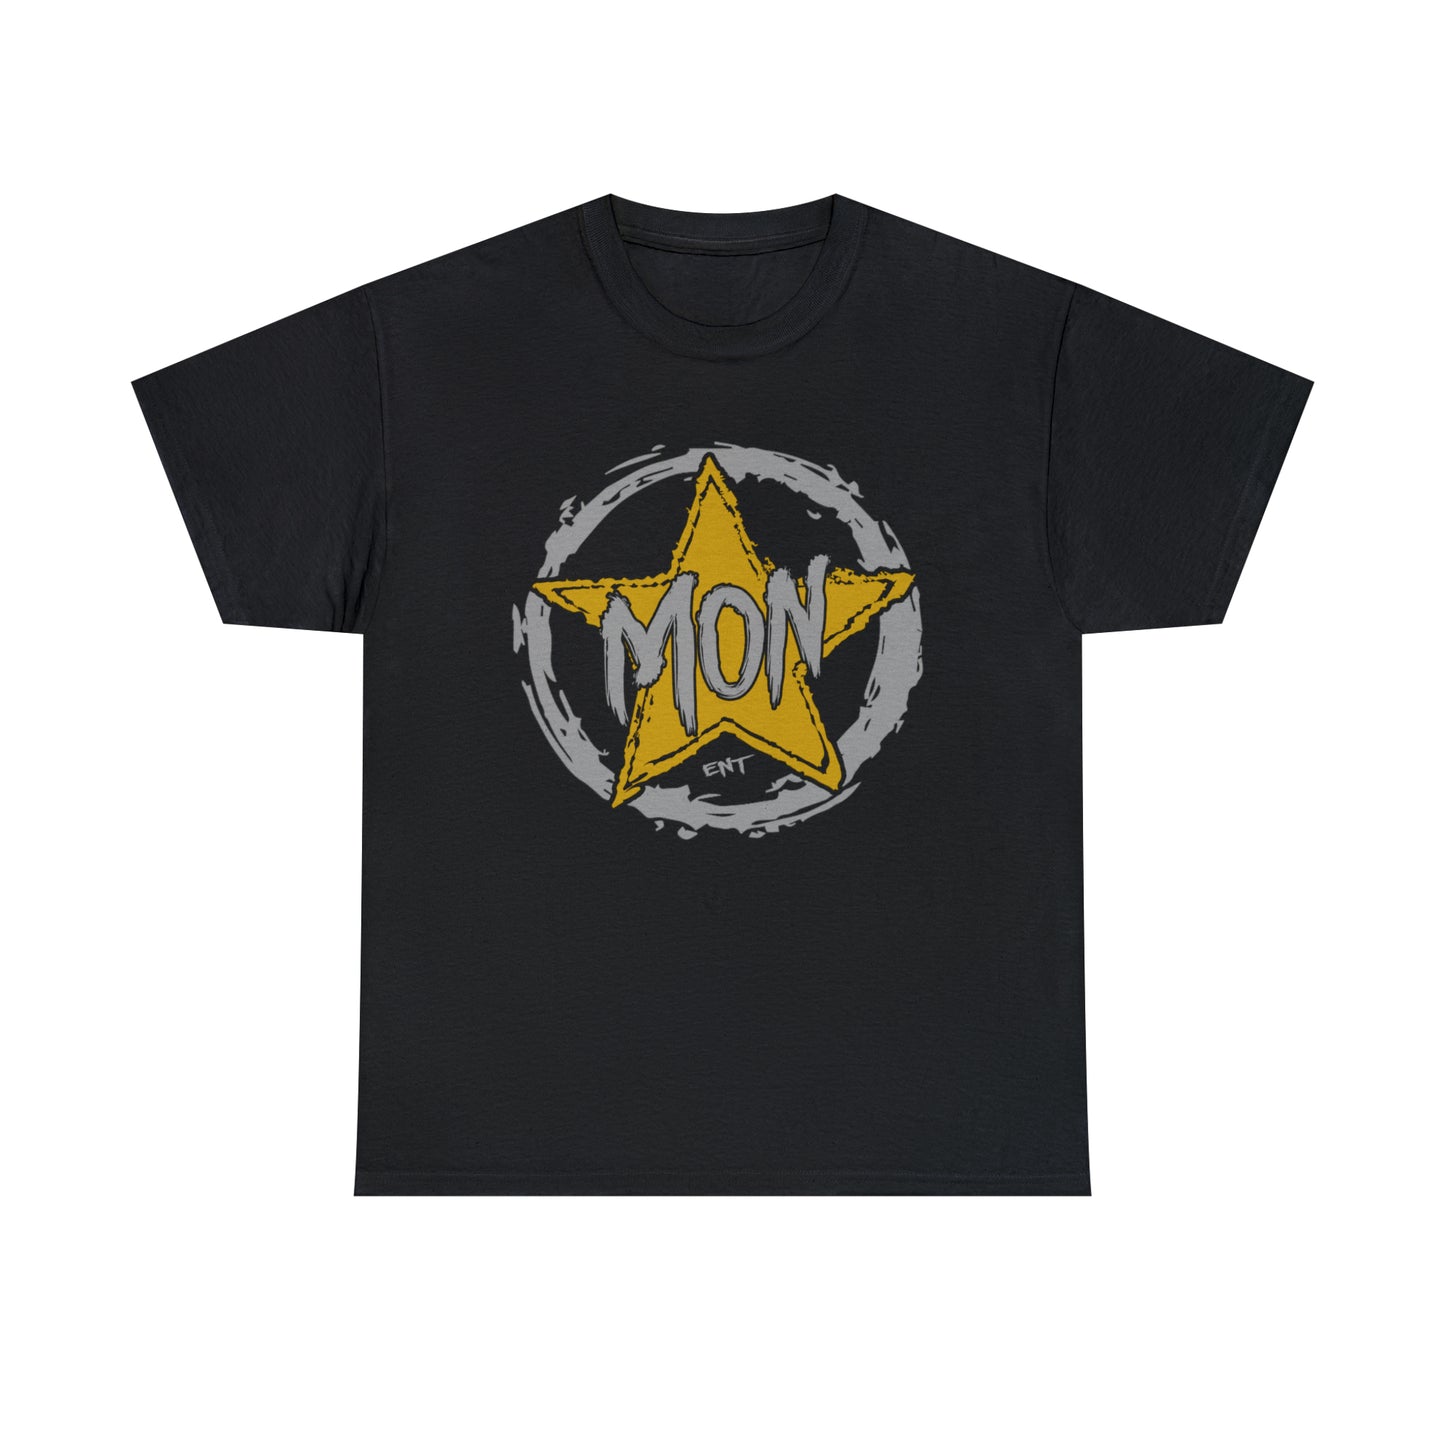 Monstar "Silver & Gold" Variant T-Shirt